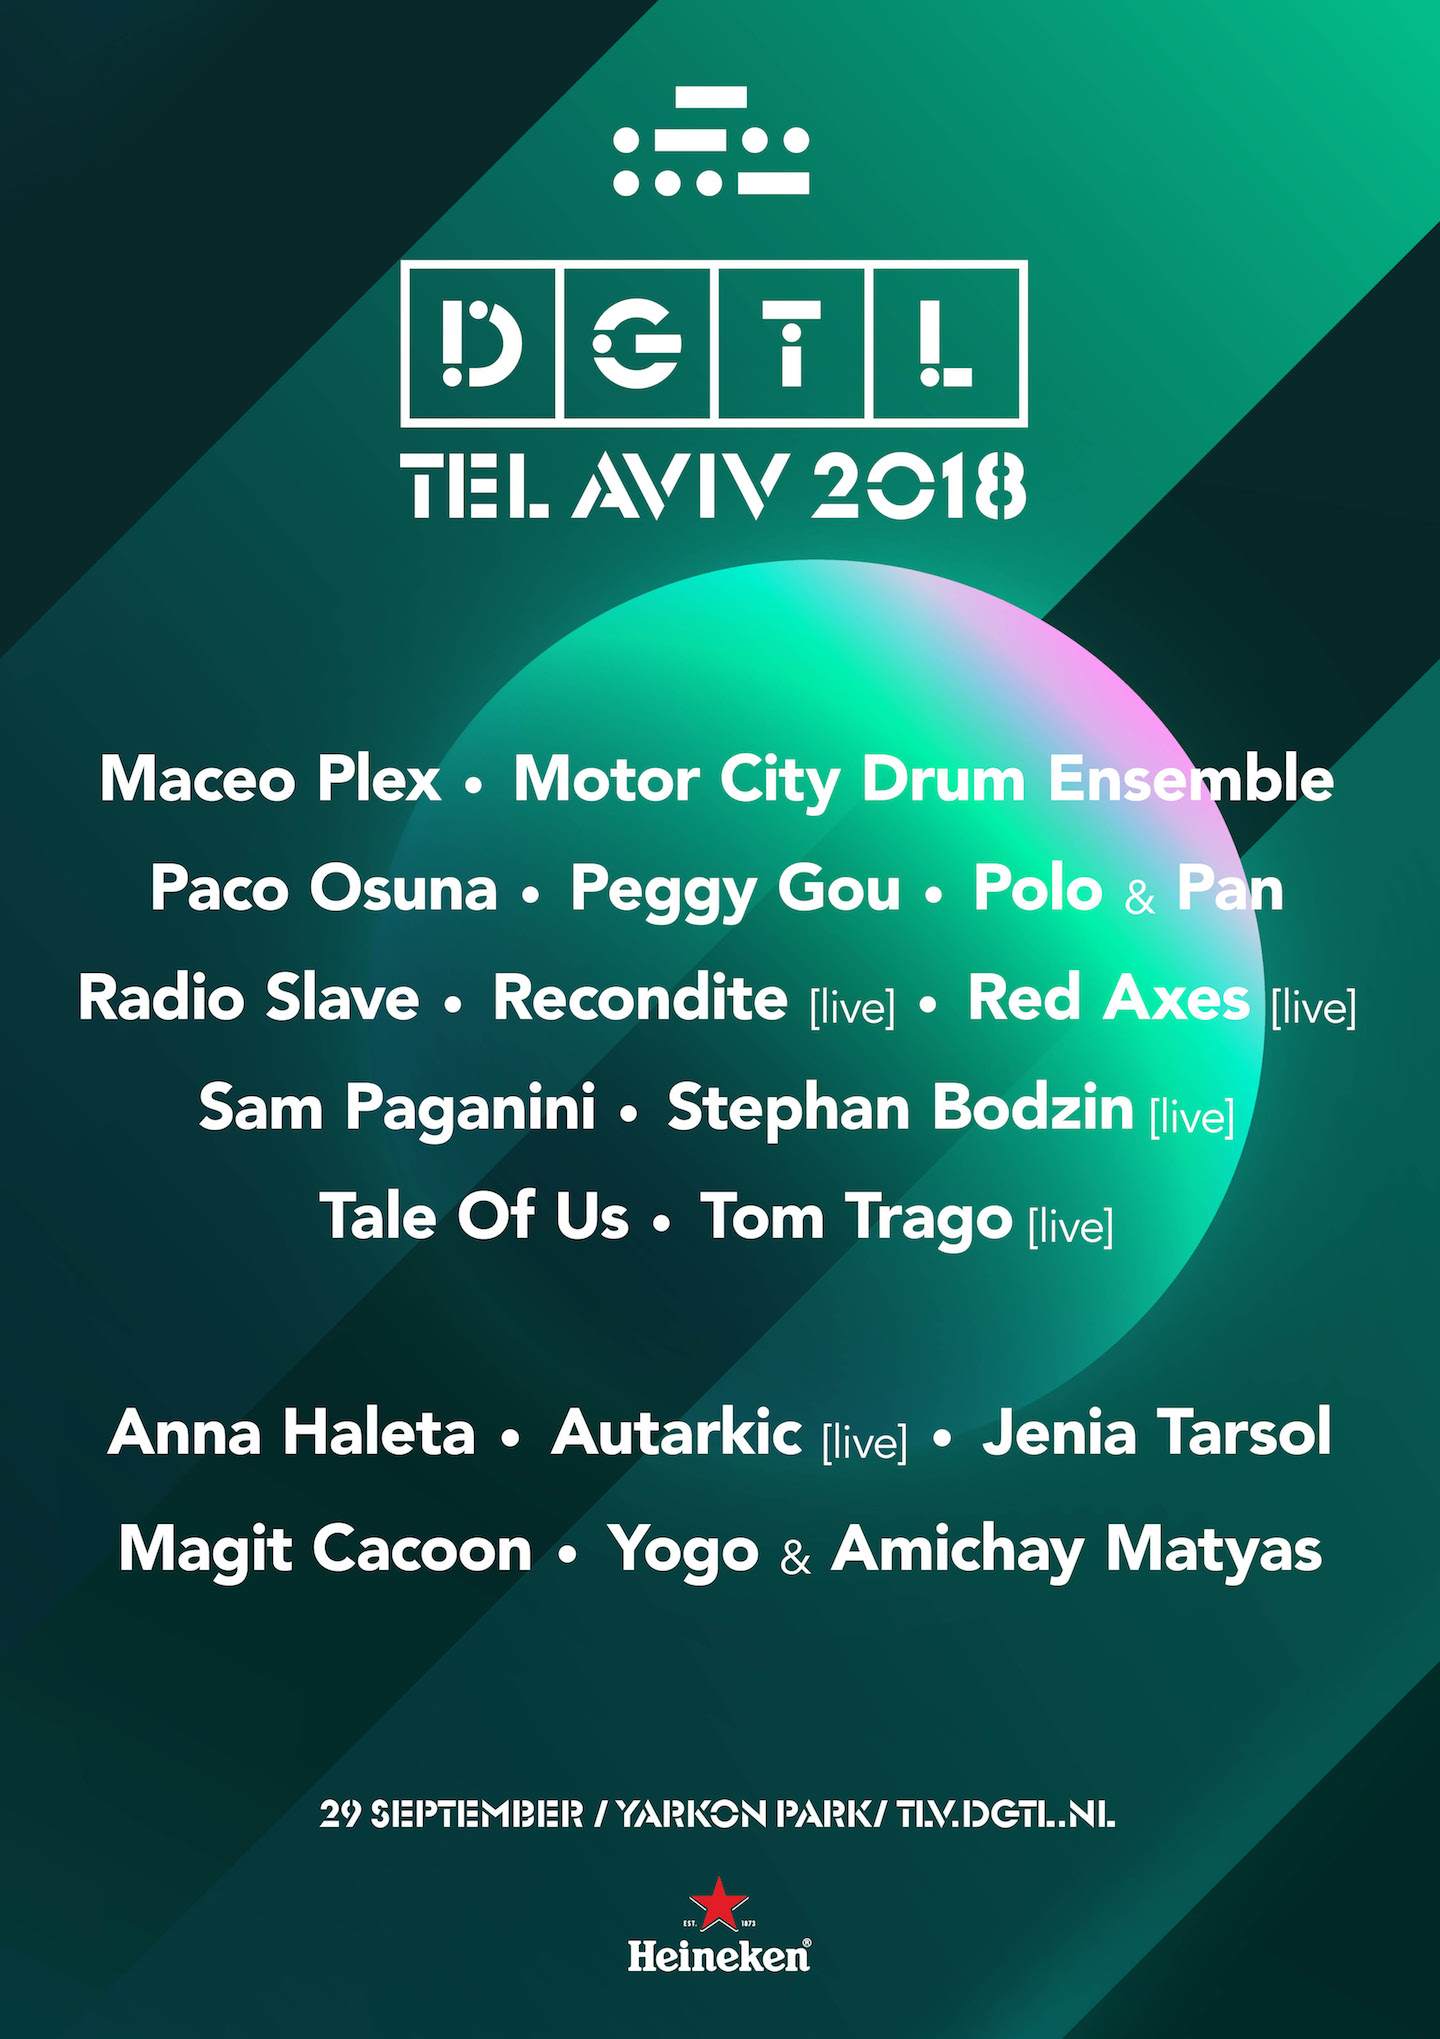 DGTL Tel Aviv finalises 2018 lineup image